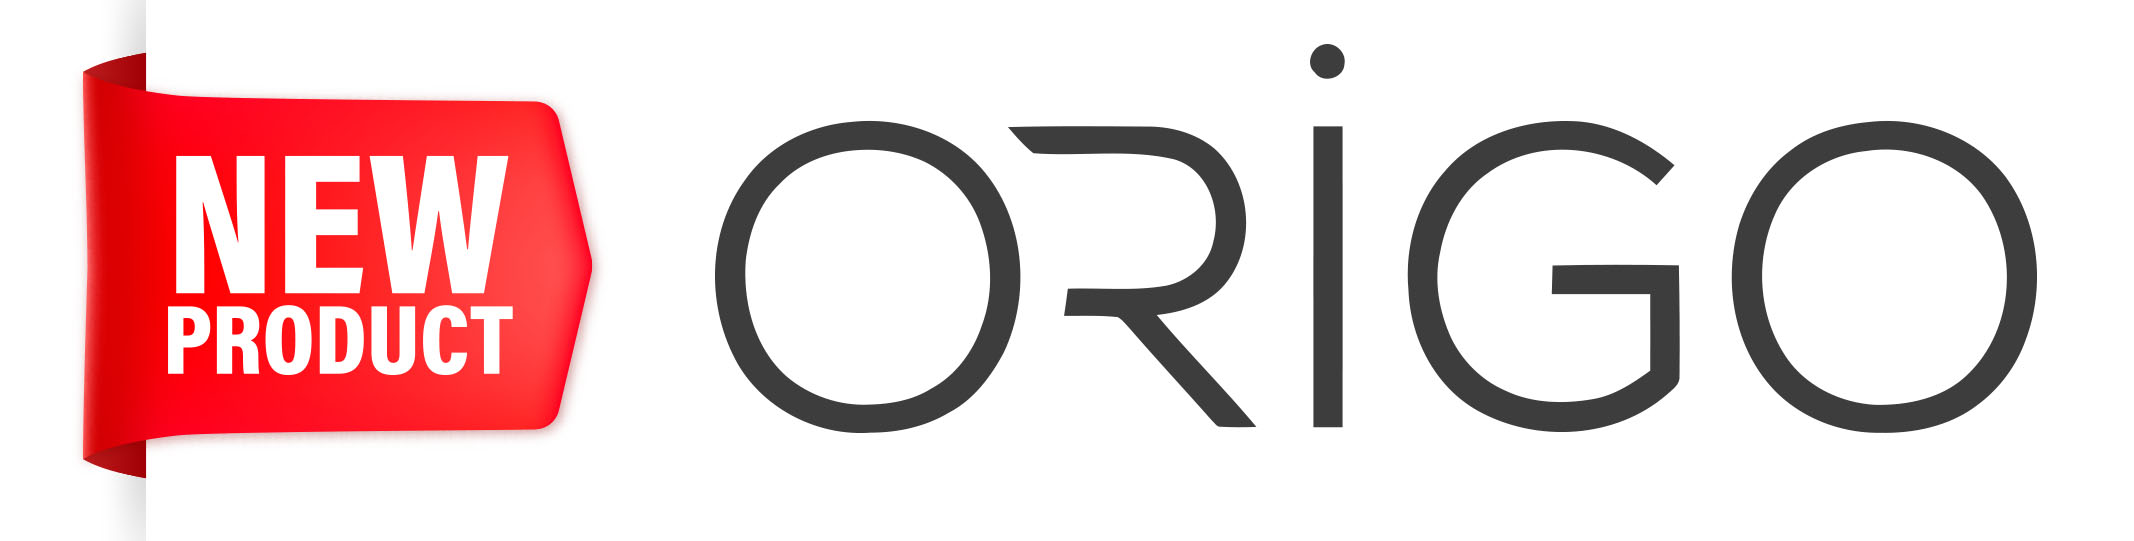 P6 ORIGO logo and text